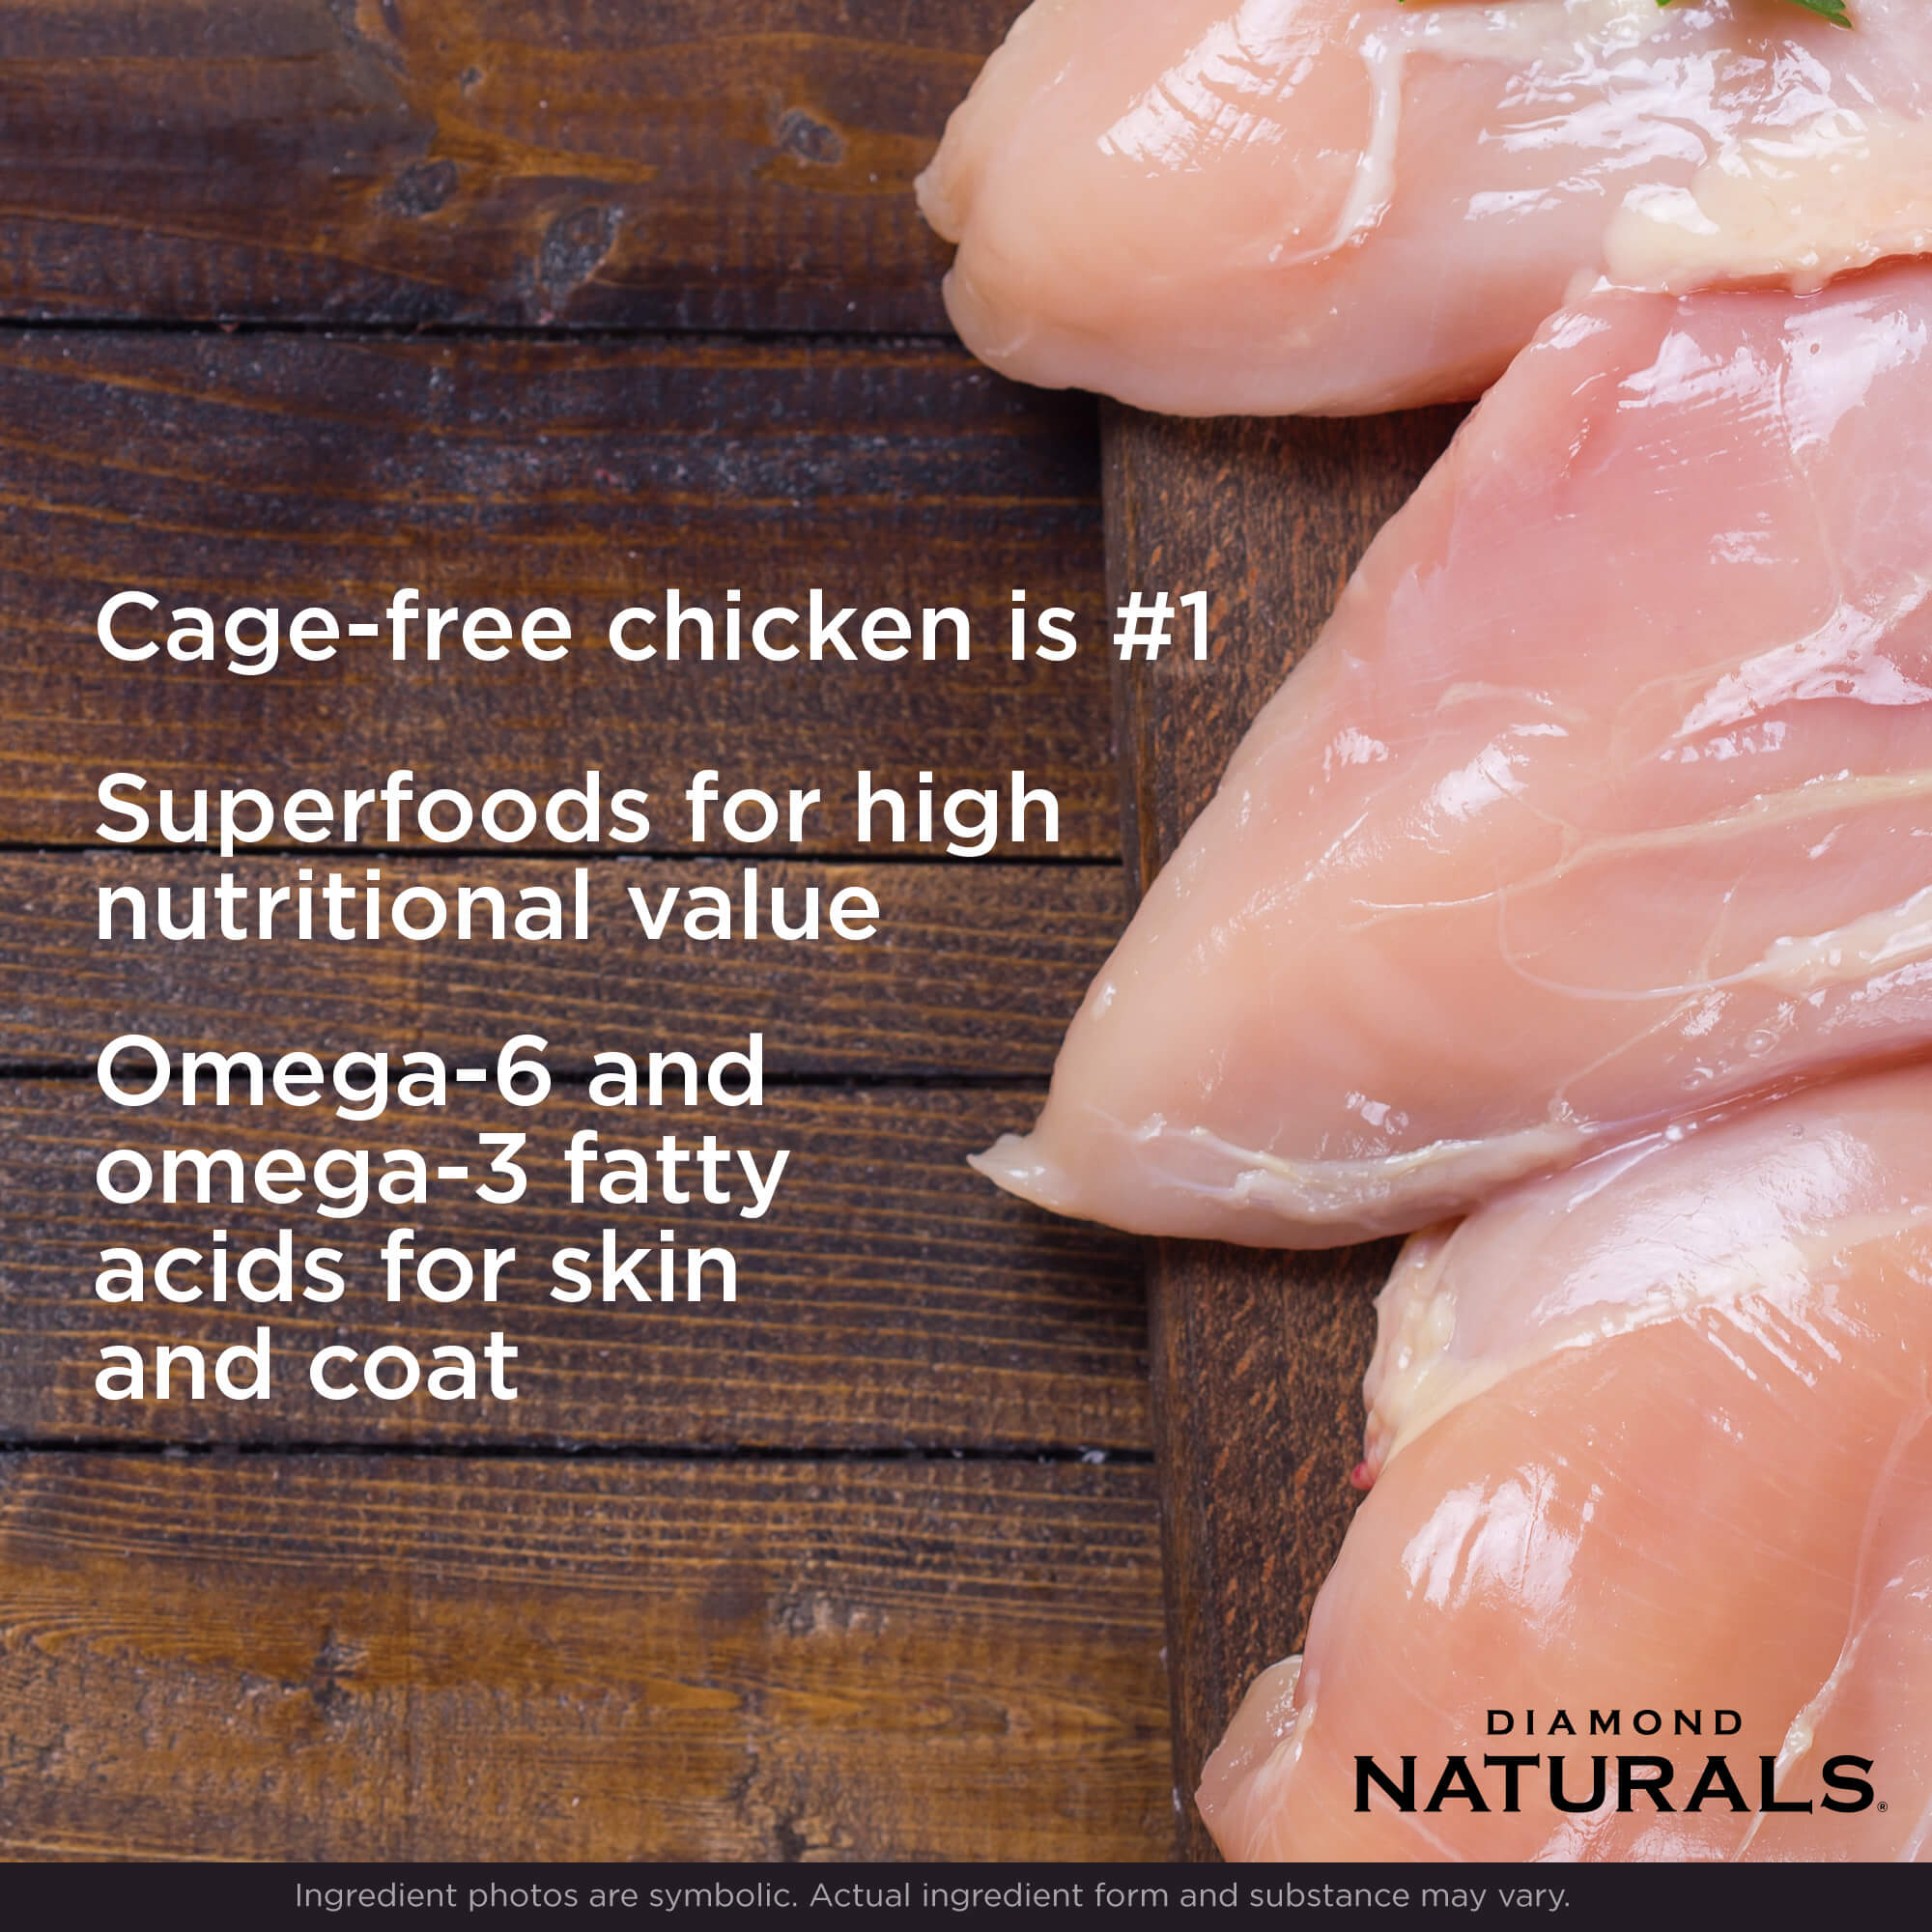 Diamon Naturals Chicken Cage-free chicken is #1